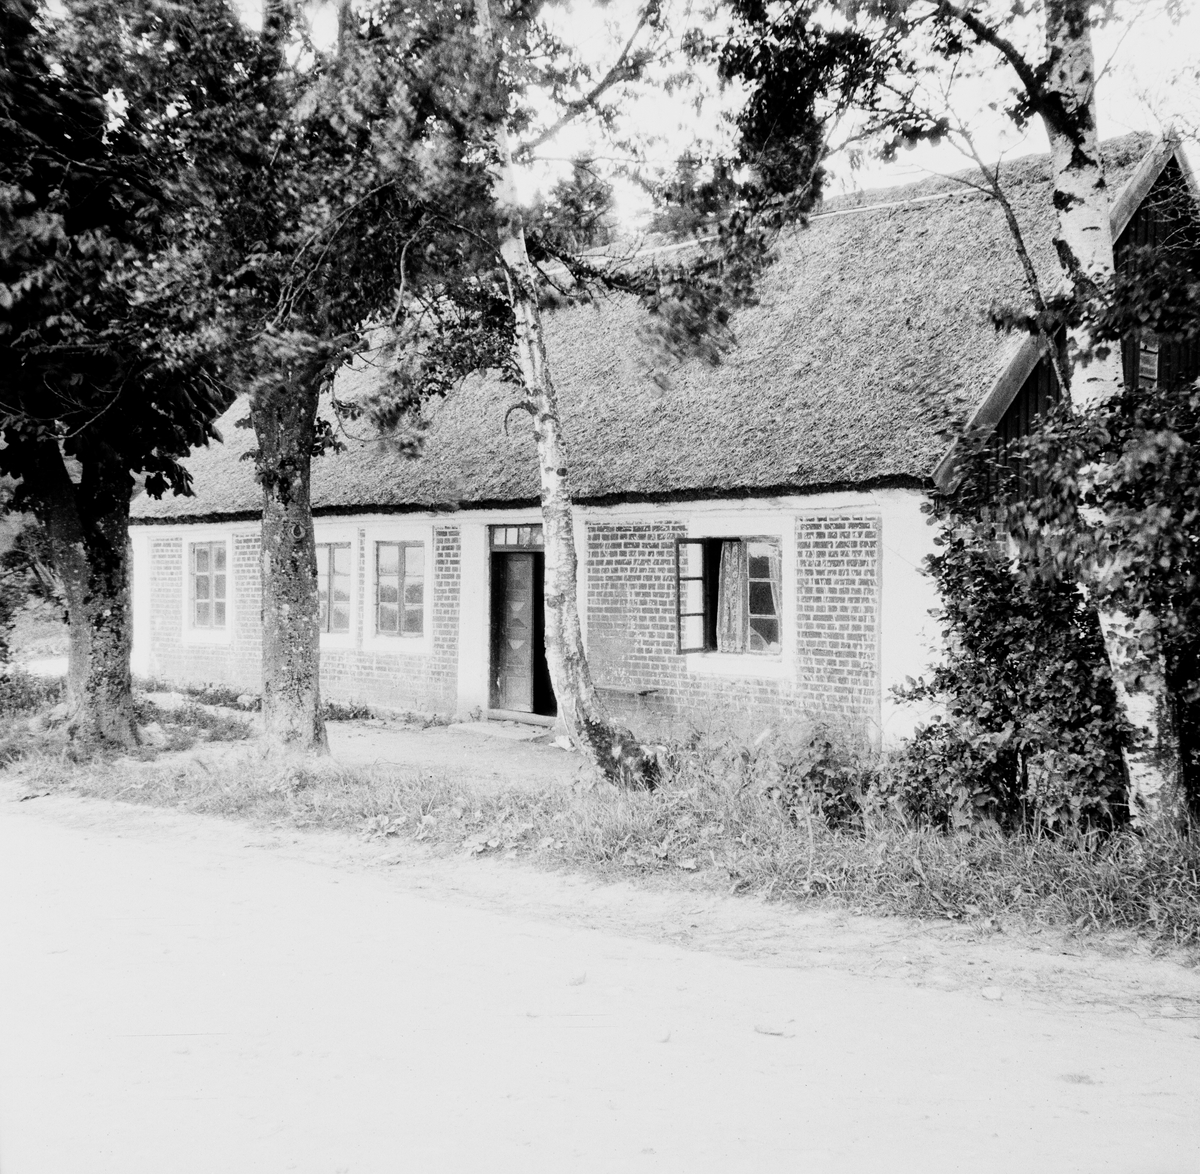 Mellan Ängelholm och Torekov, Skåne
Exteriör

Svensk arkitektur: kyrkor, herrgårdar med mera fotograferade av Arkitekturminnesföreningen 1908-23.